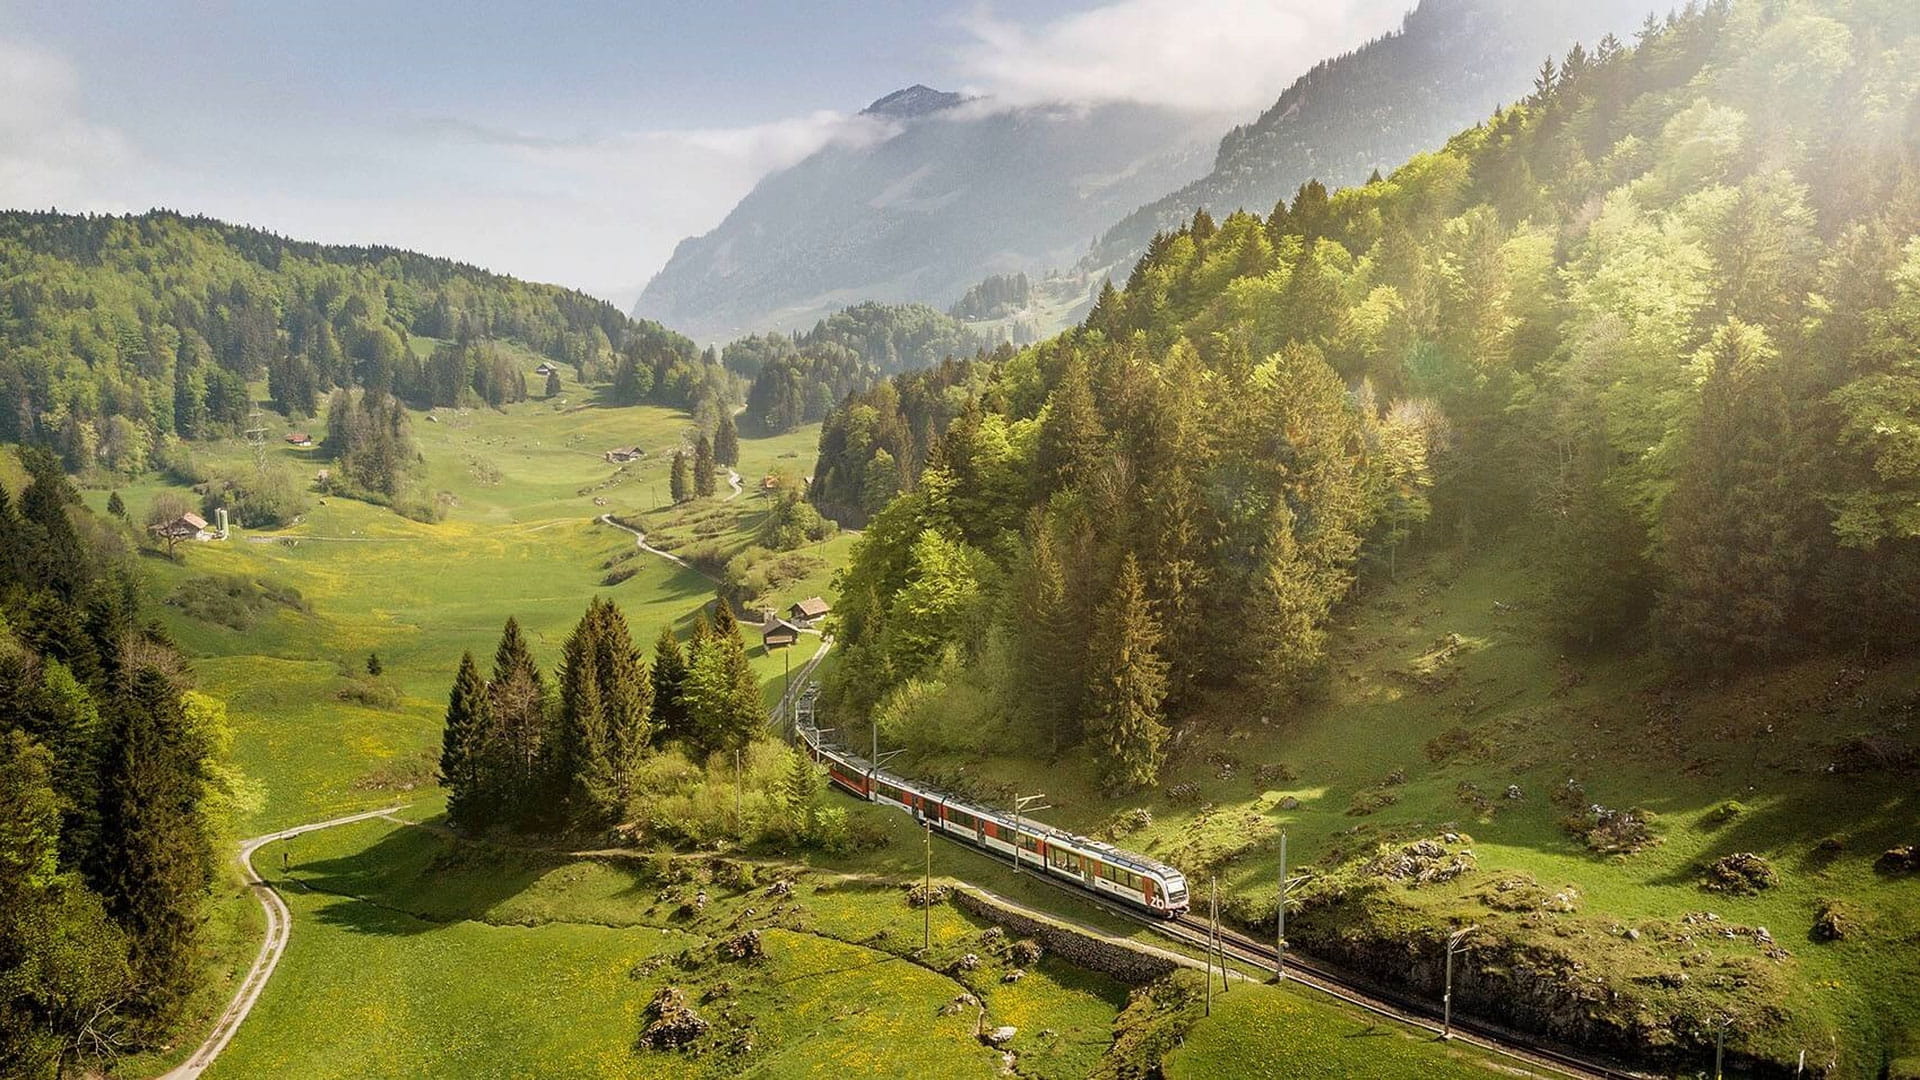 Grand Train Tour of Switzerland